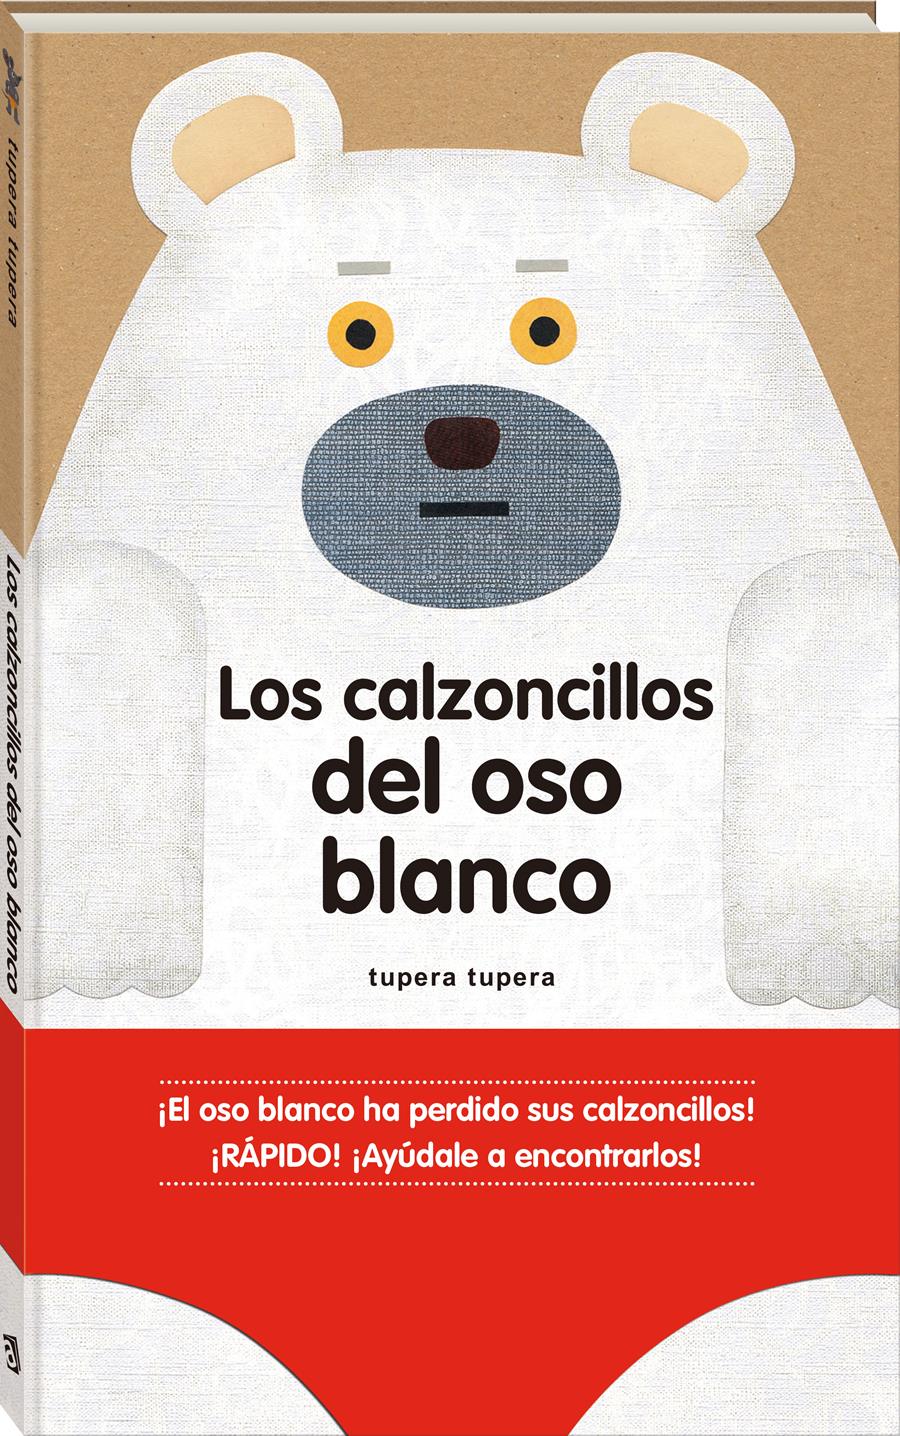 Los calzoncillos del oso blanco | 978-84-16394-16-6 | Tupera Tupera | Álbumes ilustrados, libros informativos y objetos literarios.